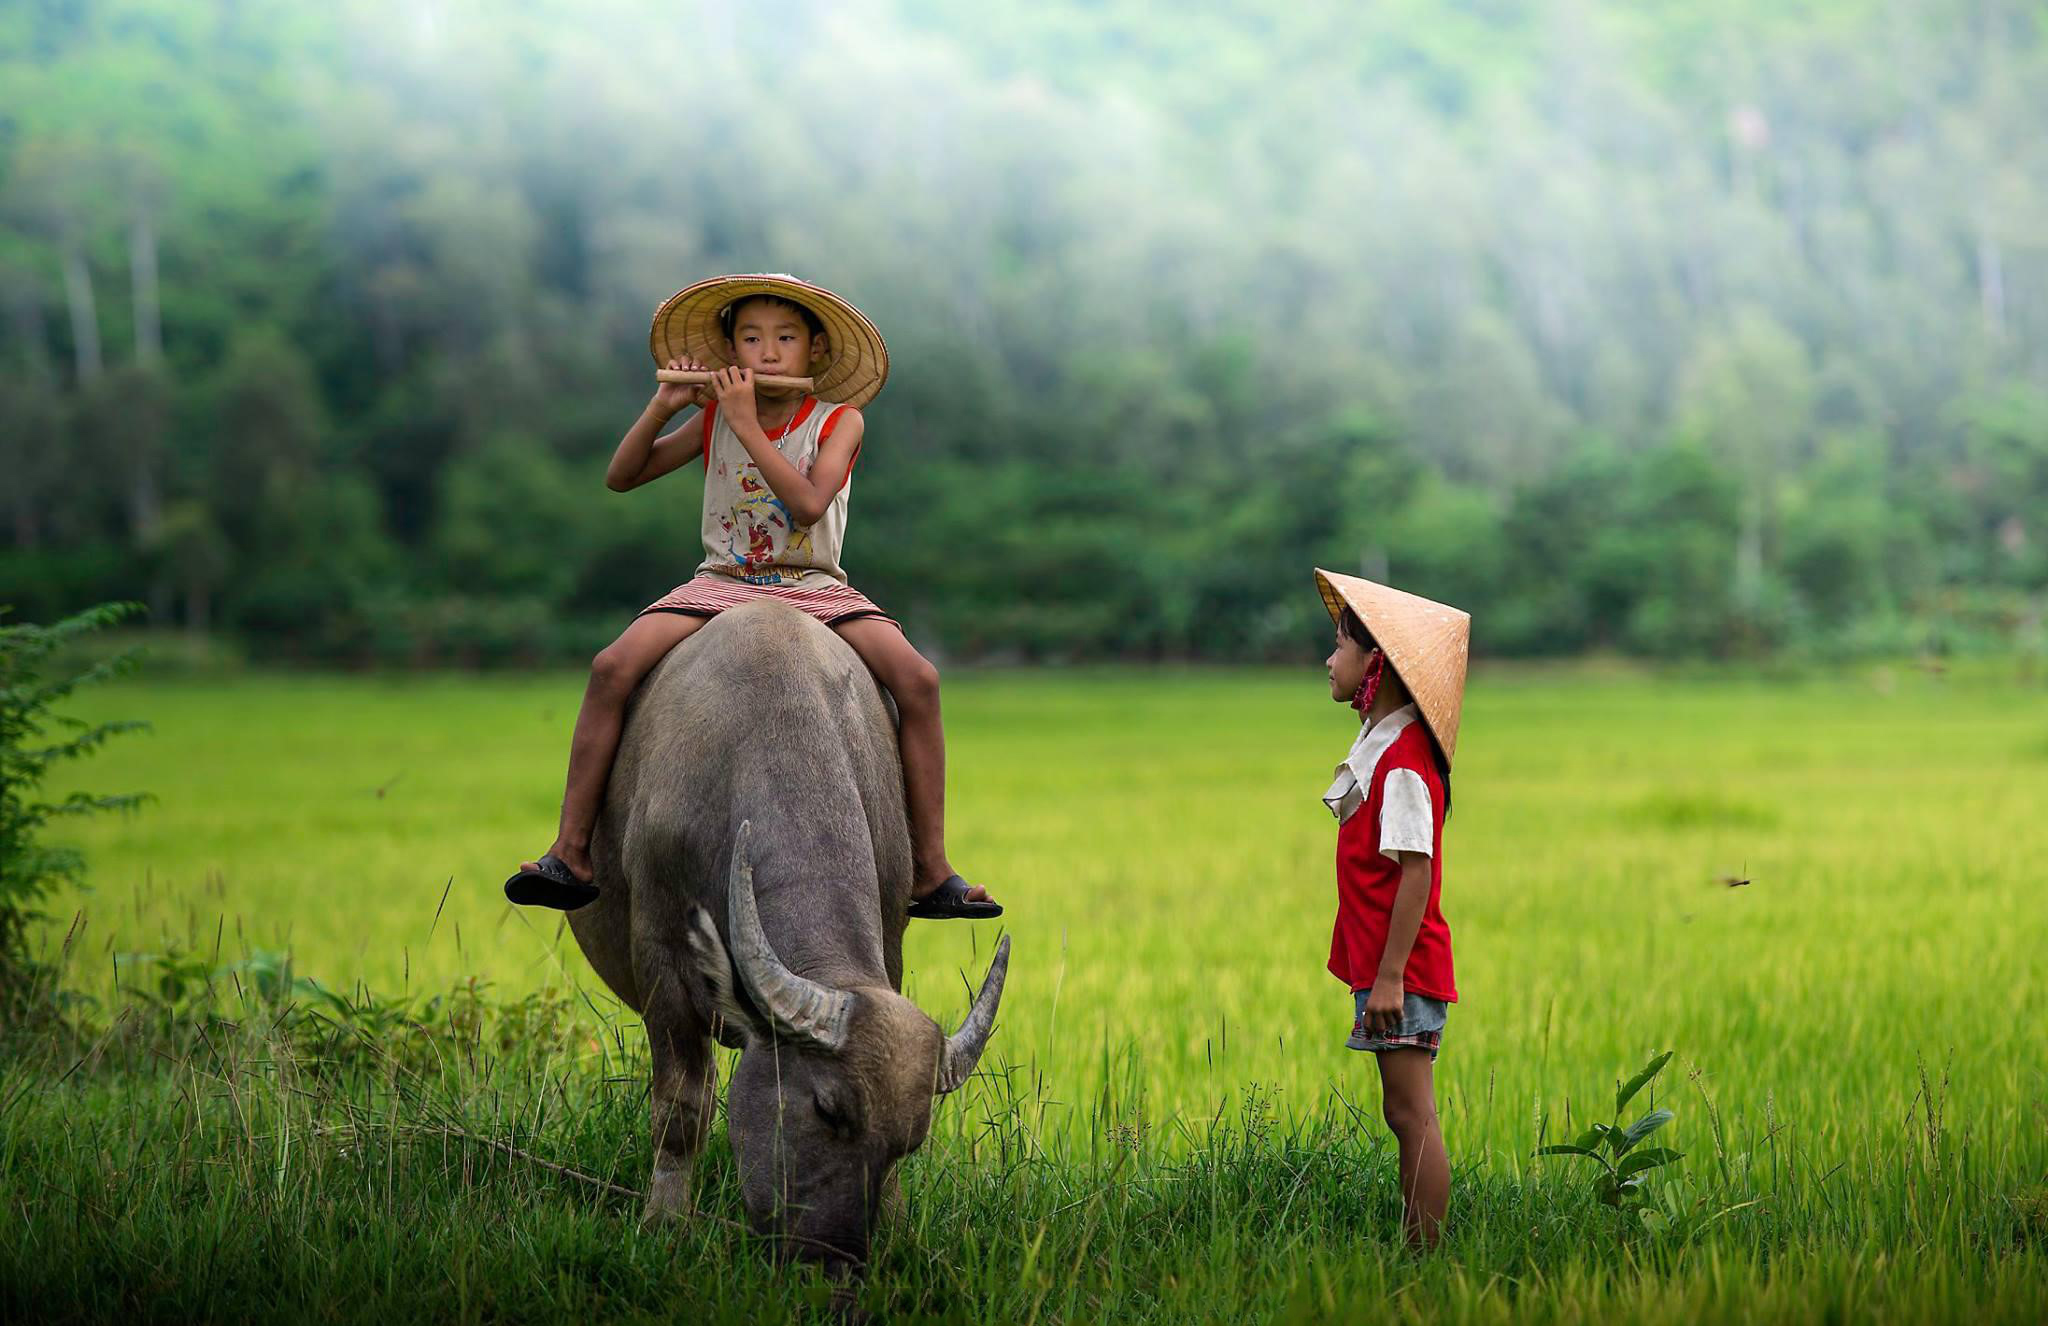 Việt Nam đẹp là một danh từ không thể bỏ qua. Hãy cùng ngắm nhìn những mảng sắc đẹp của đất nước Việt Nam qua hình ảnh và cảm nhận sự độc đáo và mê hoặc của đất nước này.